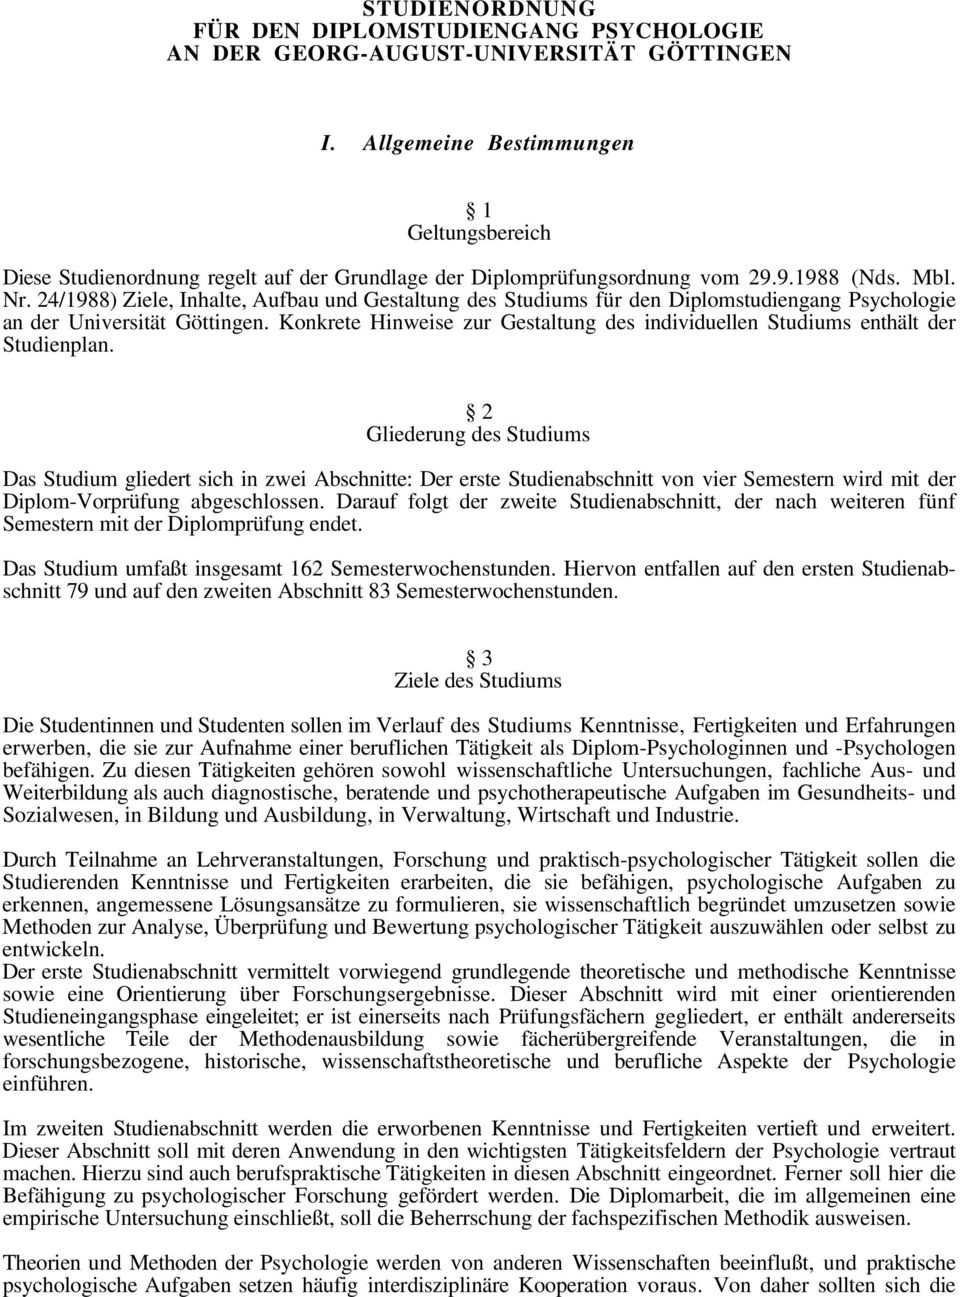 24/1988) Ziele, Inhalte, Aufbau und Gestaltung des Studiums für den Diplomstudiengang Psychologie an der Universität Göttingen.